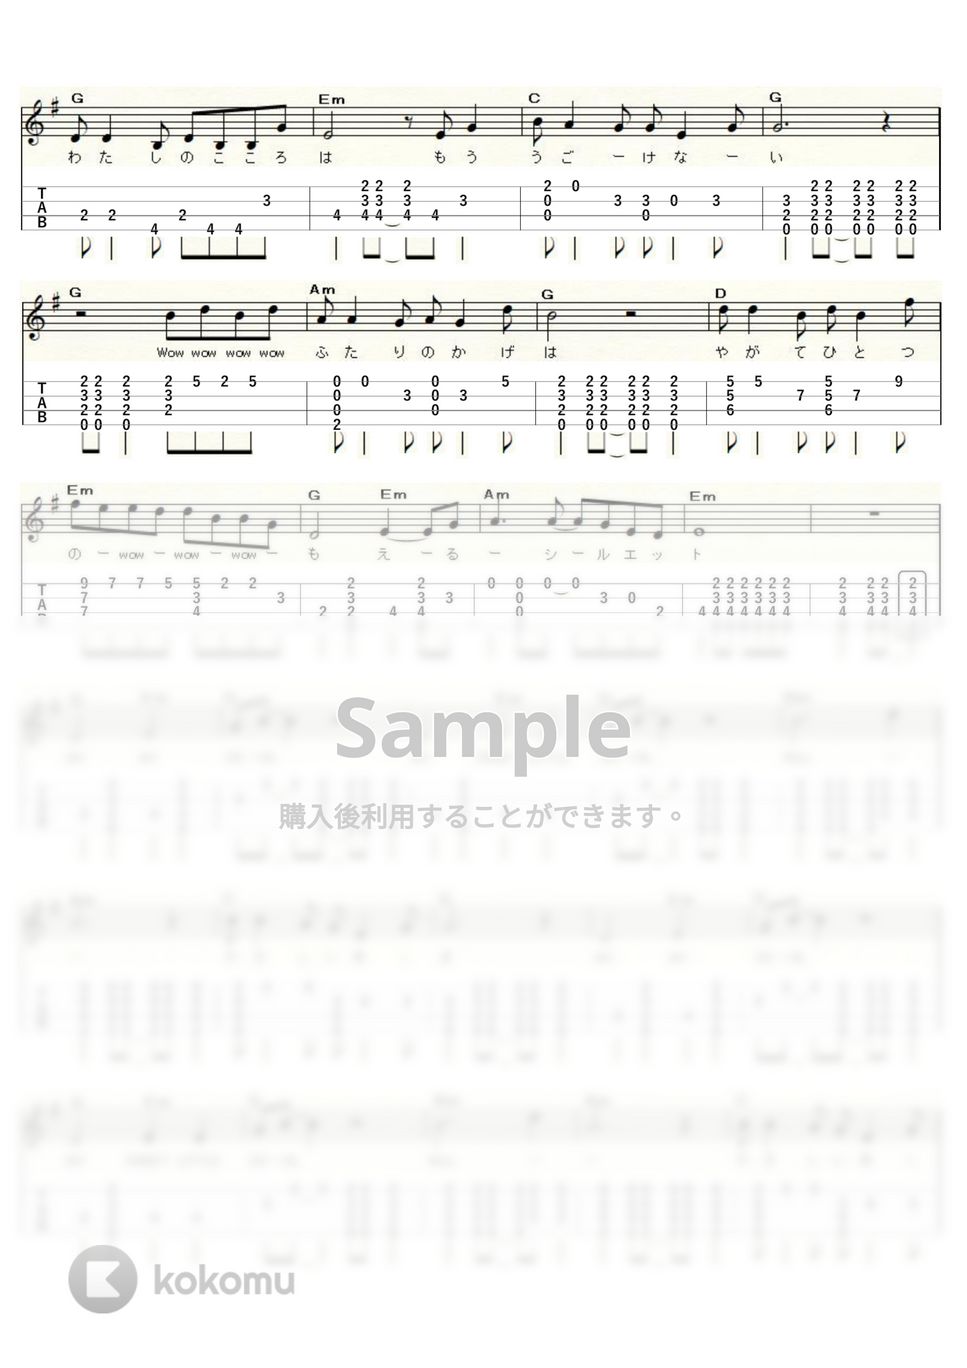 キャンディーズ - やさしい悪魔 (ｳｸﾚﾚｿﾛ / Low-G / 中級) by ukulelepapa